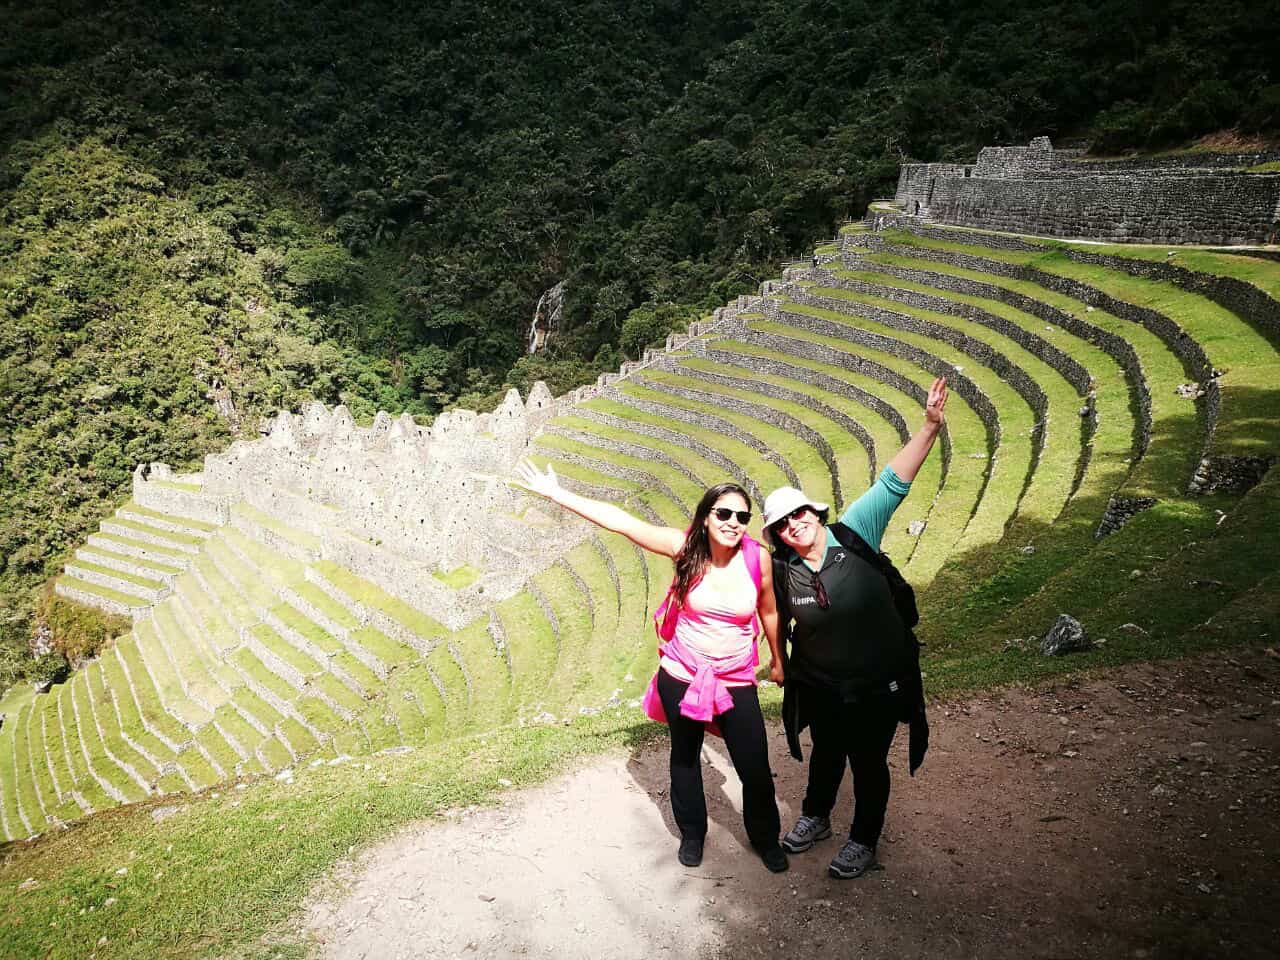 Archeological site of Machu Picchu.